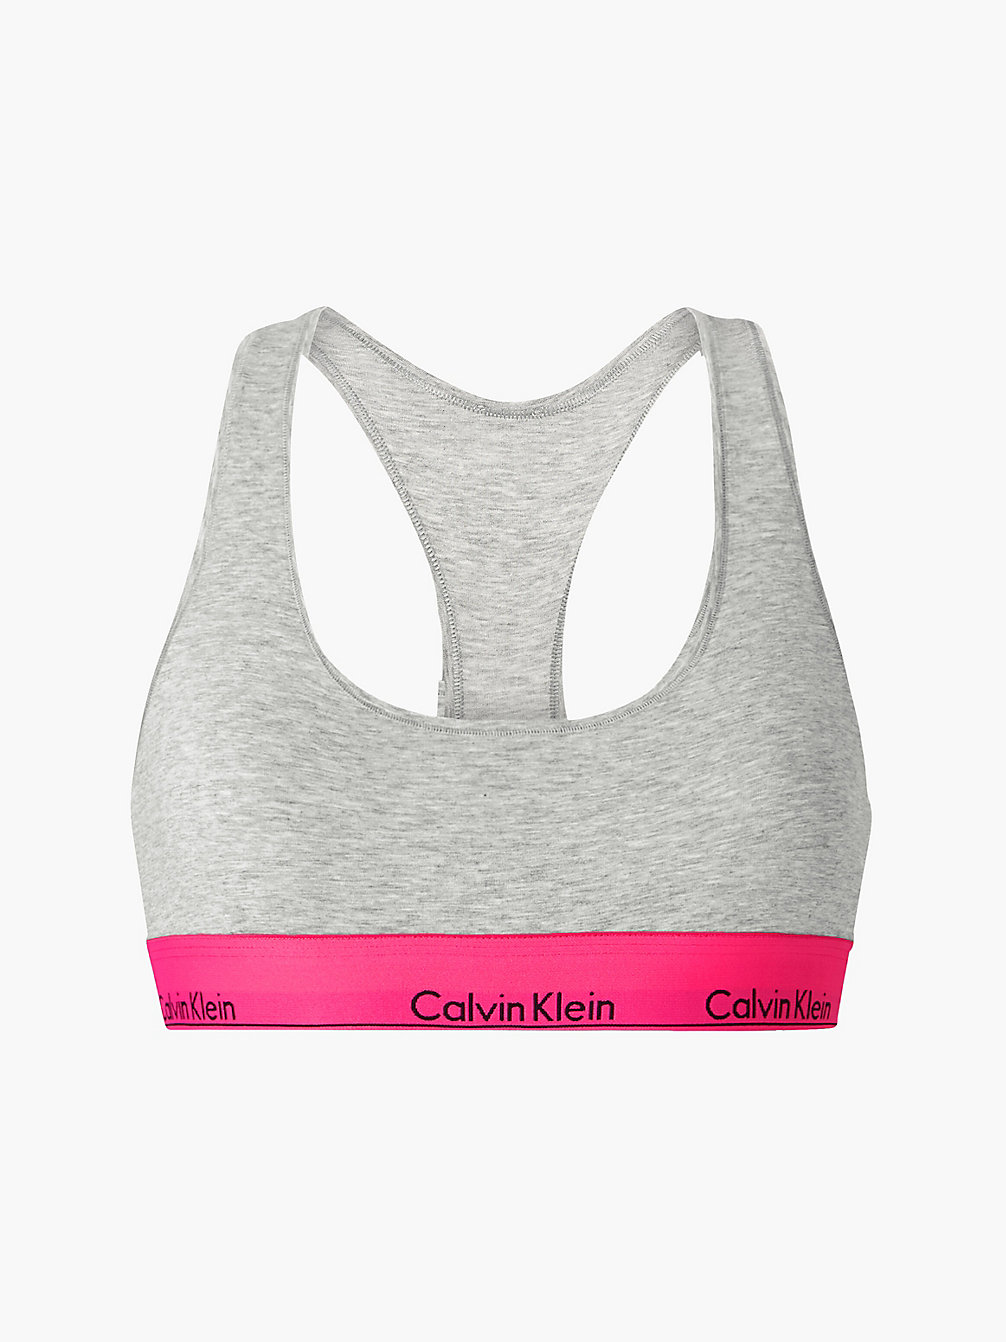 GREY HEATHER_LEGALLY KIM WB Bralette - Modern Cotton undefined women Calvin Klein